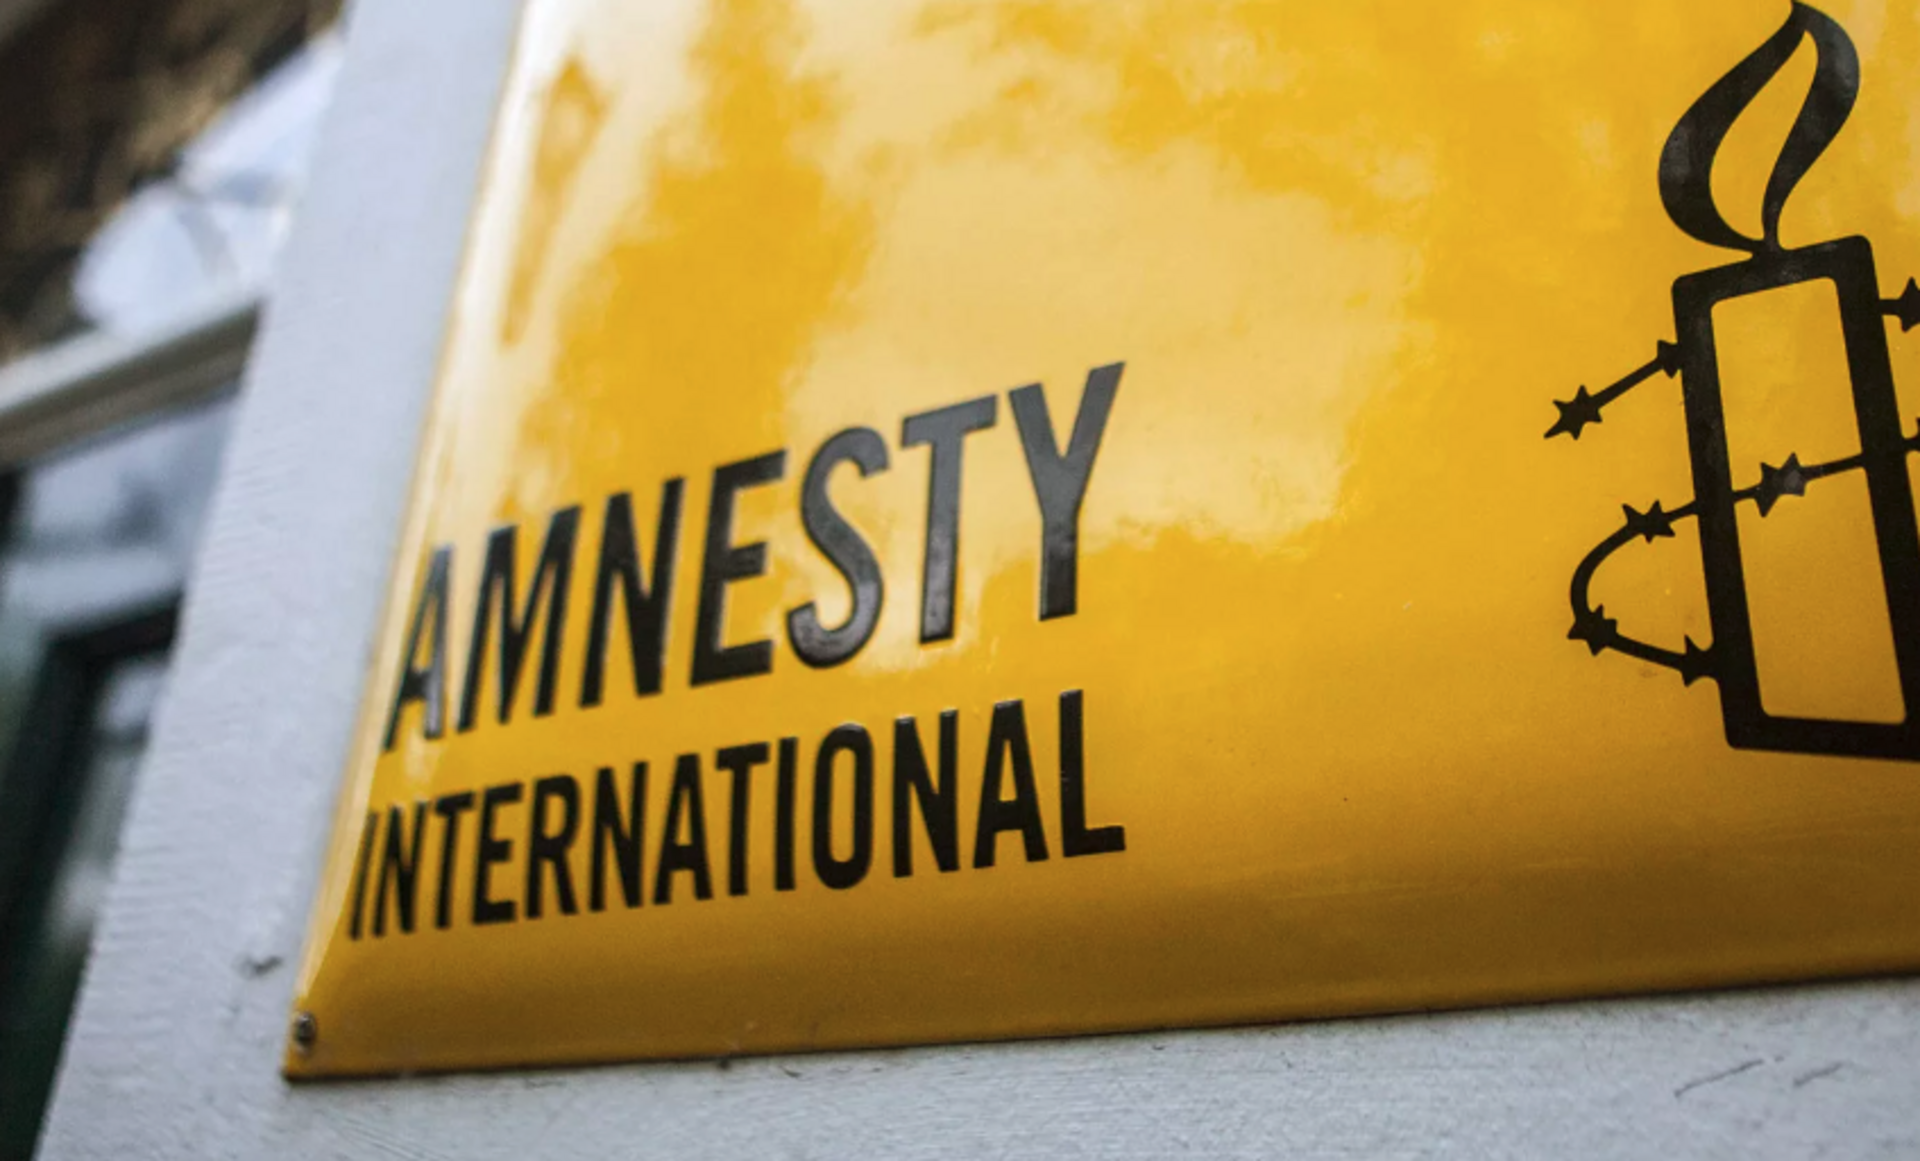 Амнистия организация. Организация Amnesty International. Международная амнистия. Правозащитная организация Международная амнистия. Amnesty International эмблема.